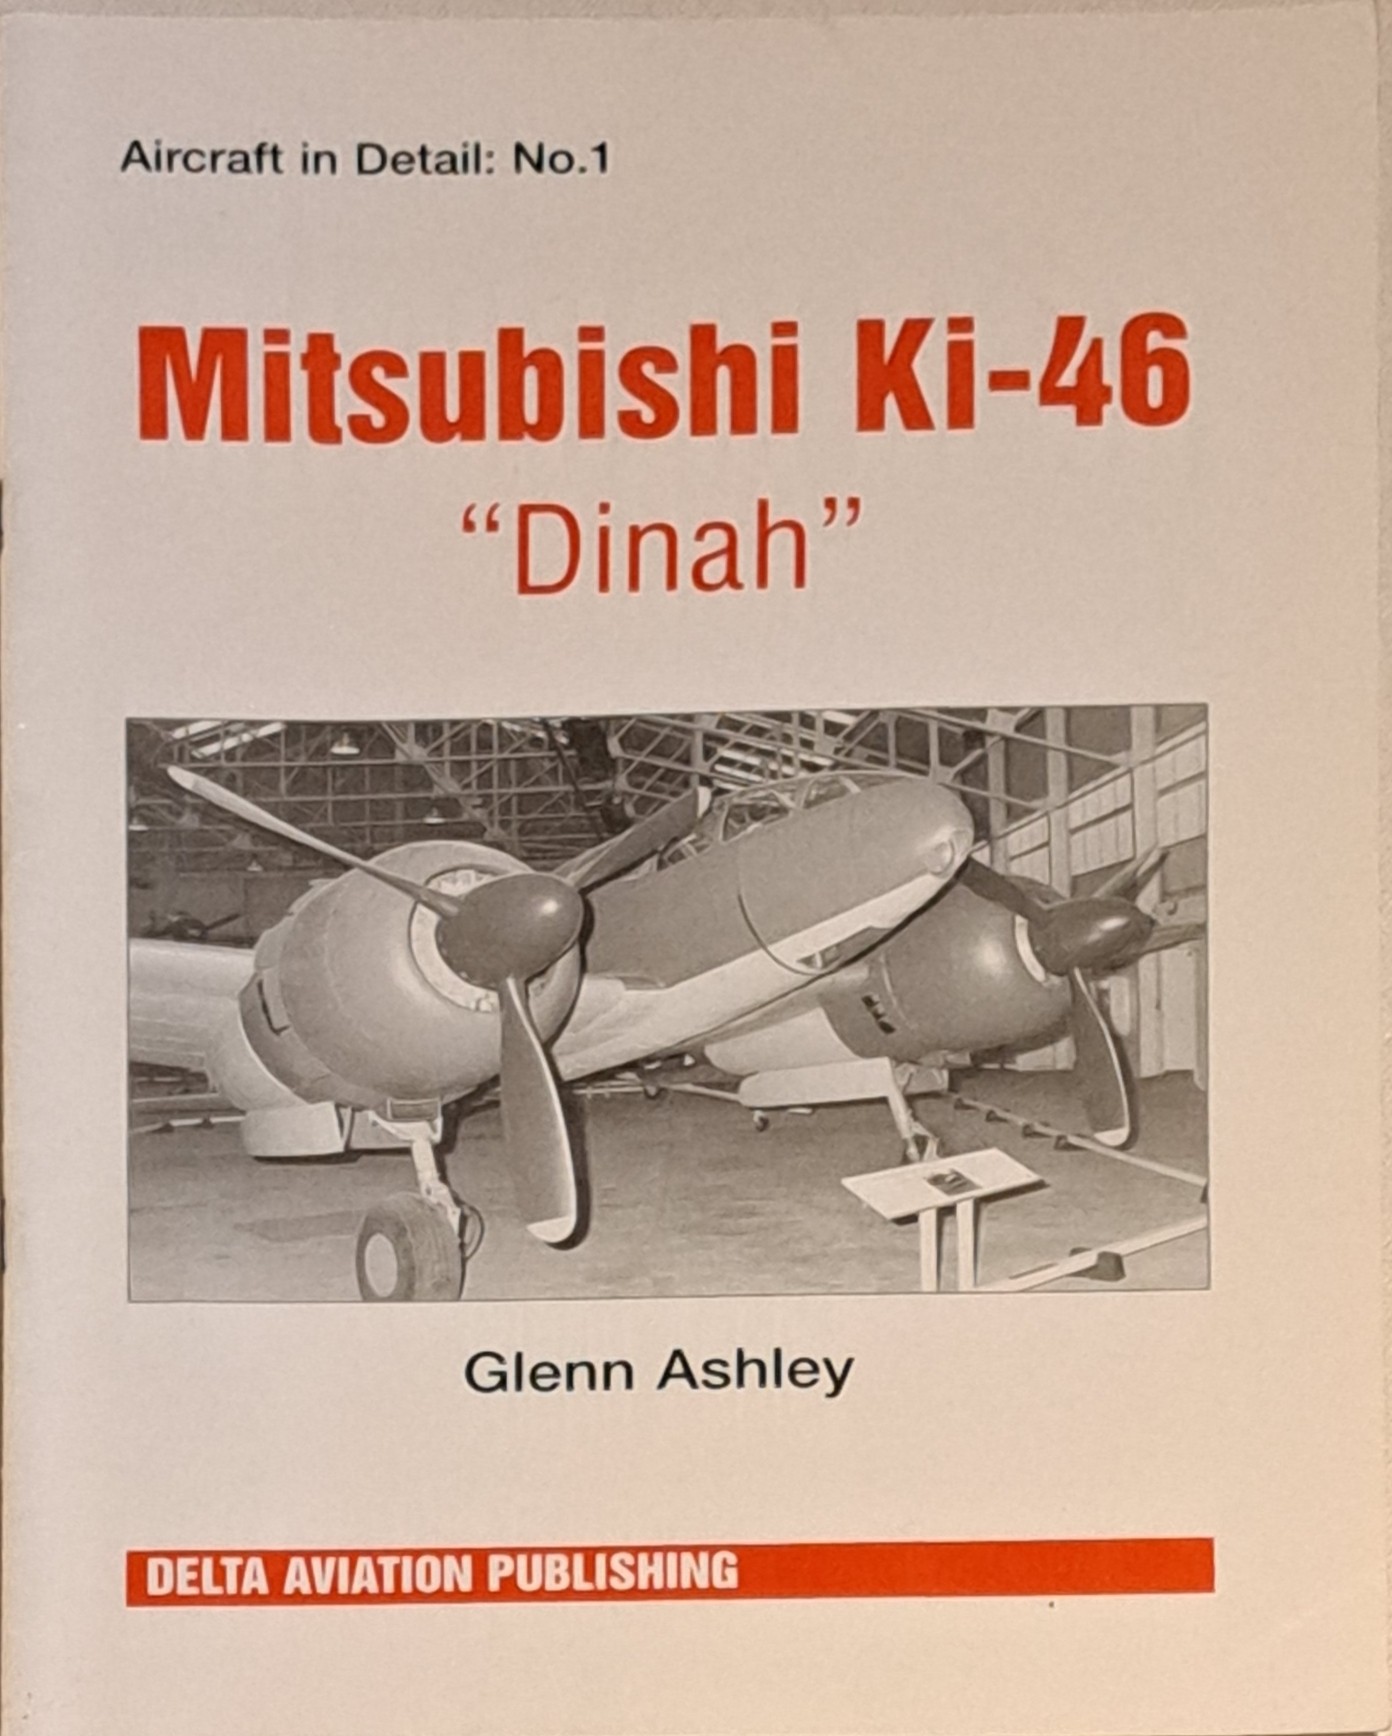 Mitsubishi Ki-46 Dinah 